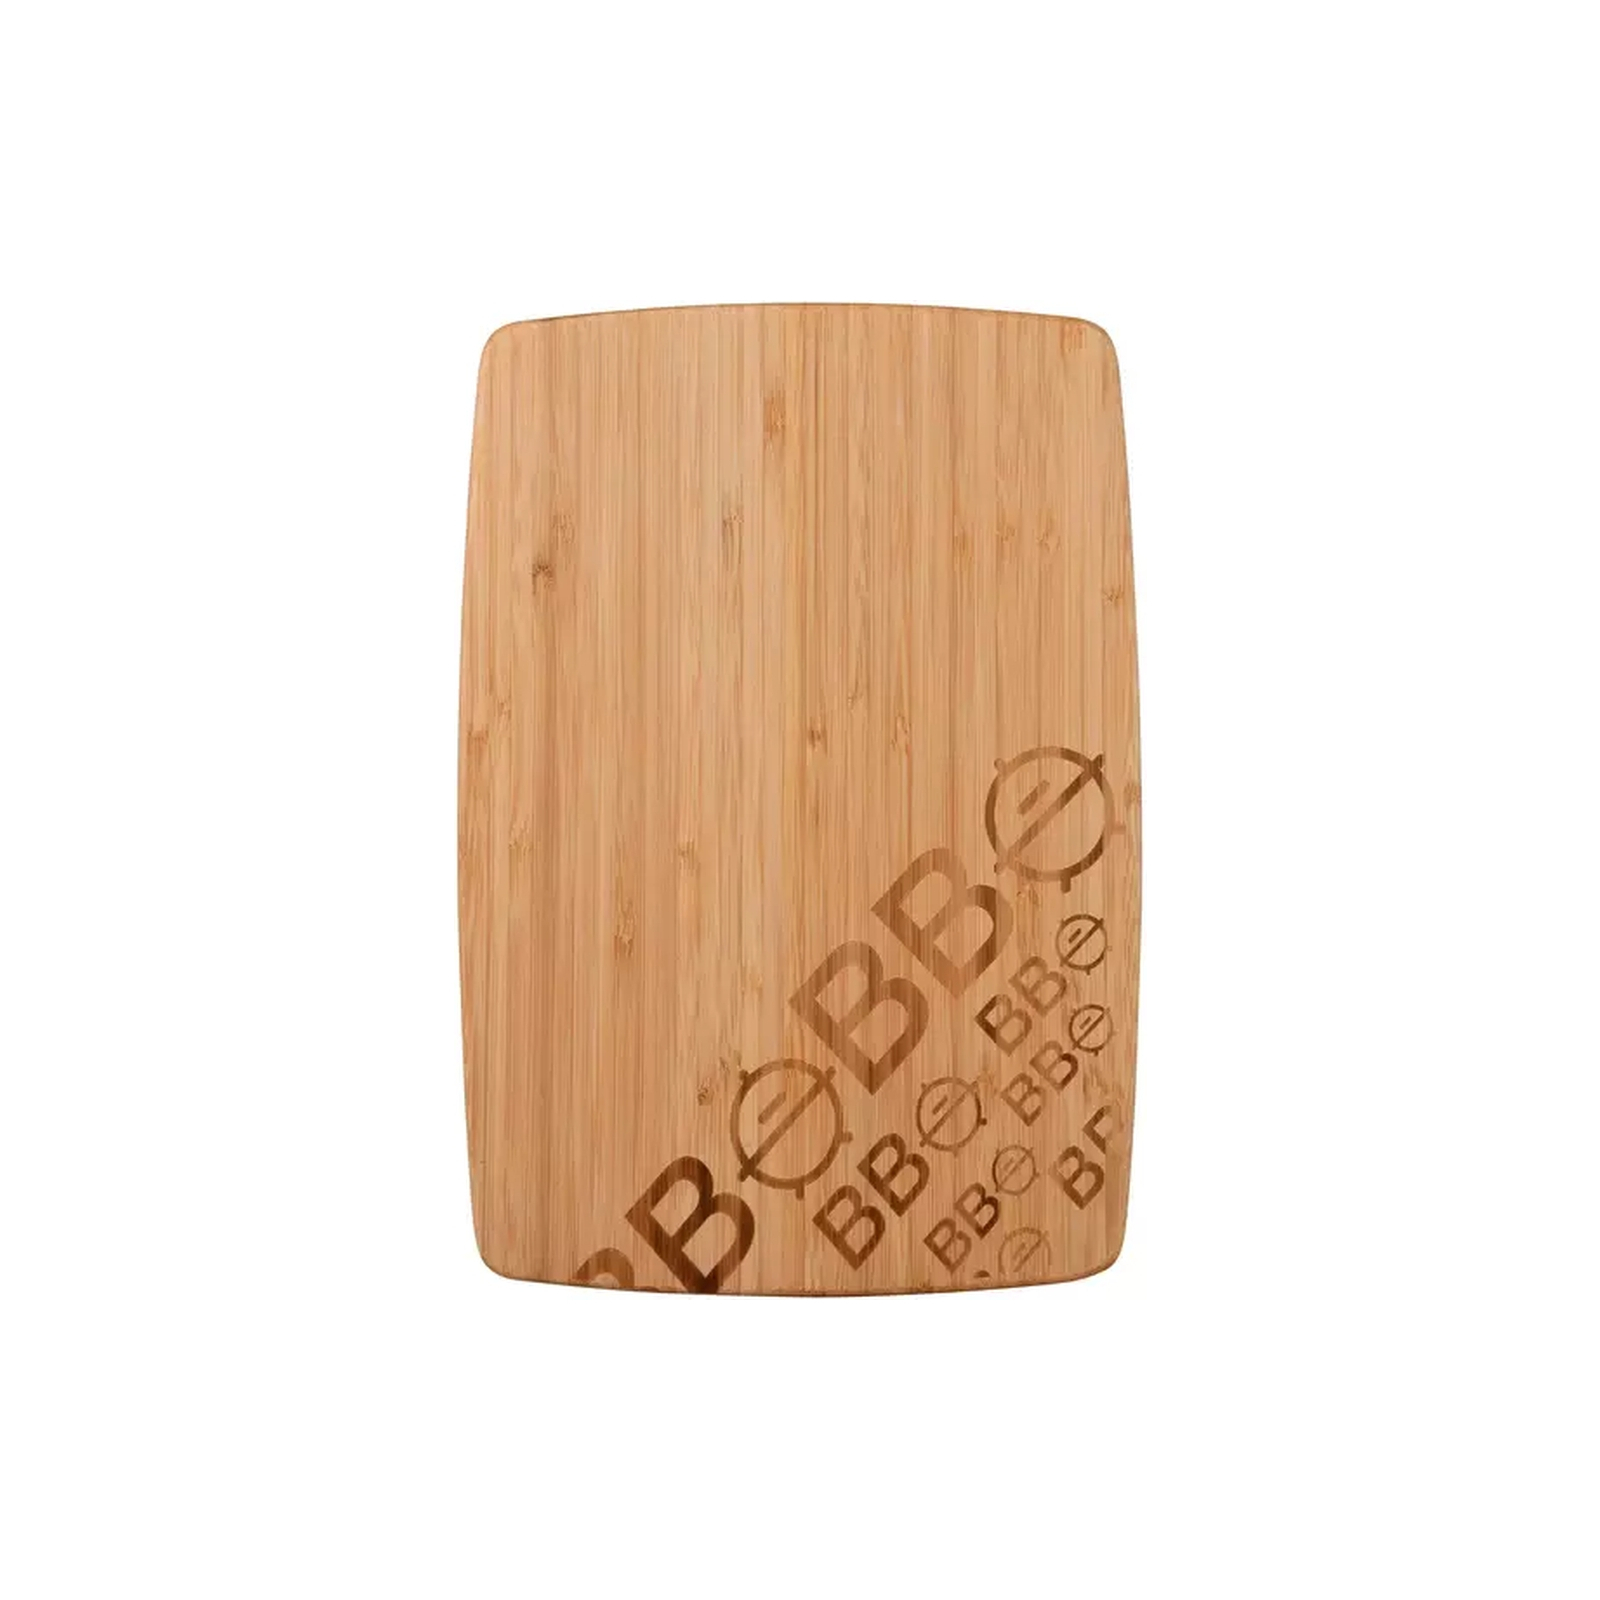 Разделочная доска Bergner Bbq lovers 30х22 см бамбук (BG-39987-AA)